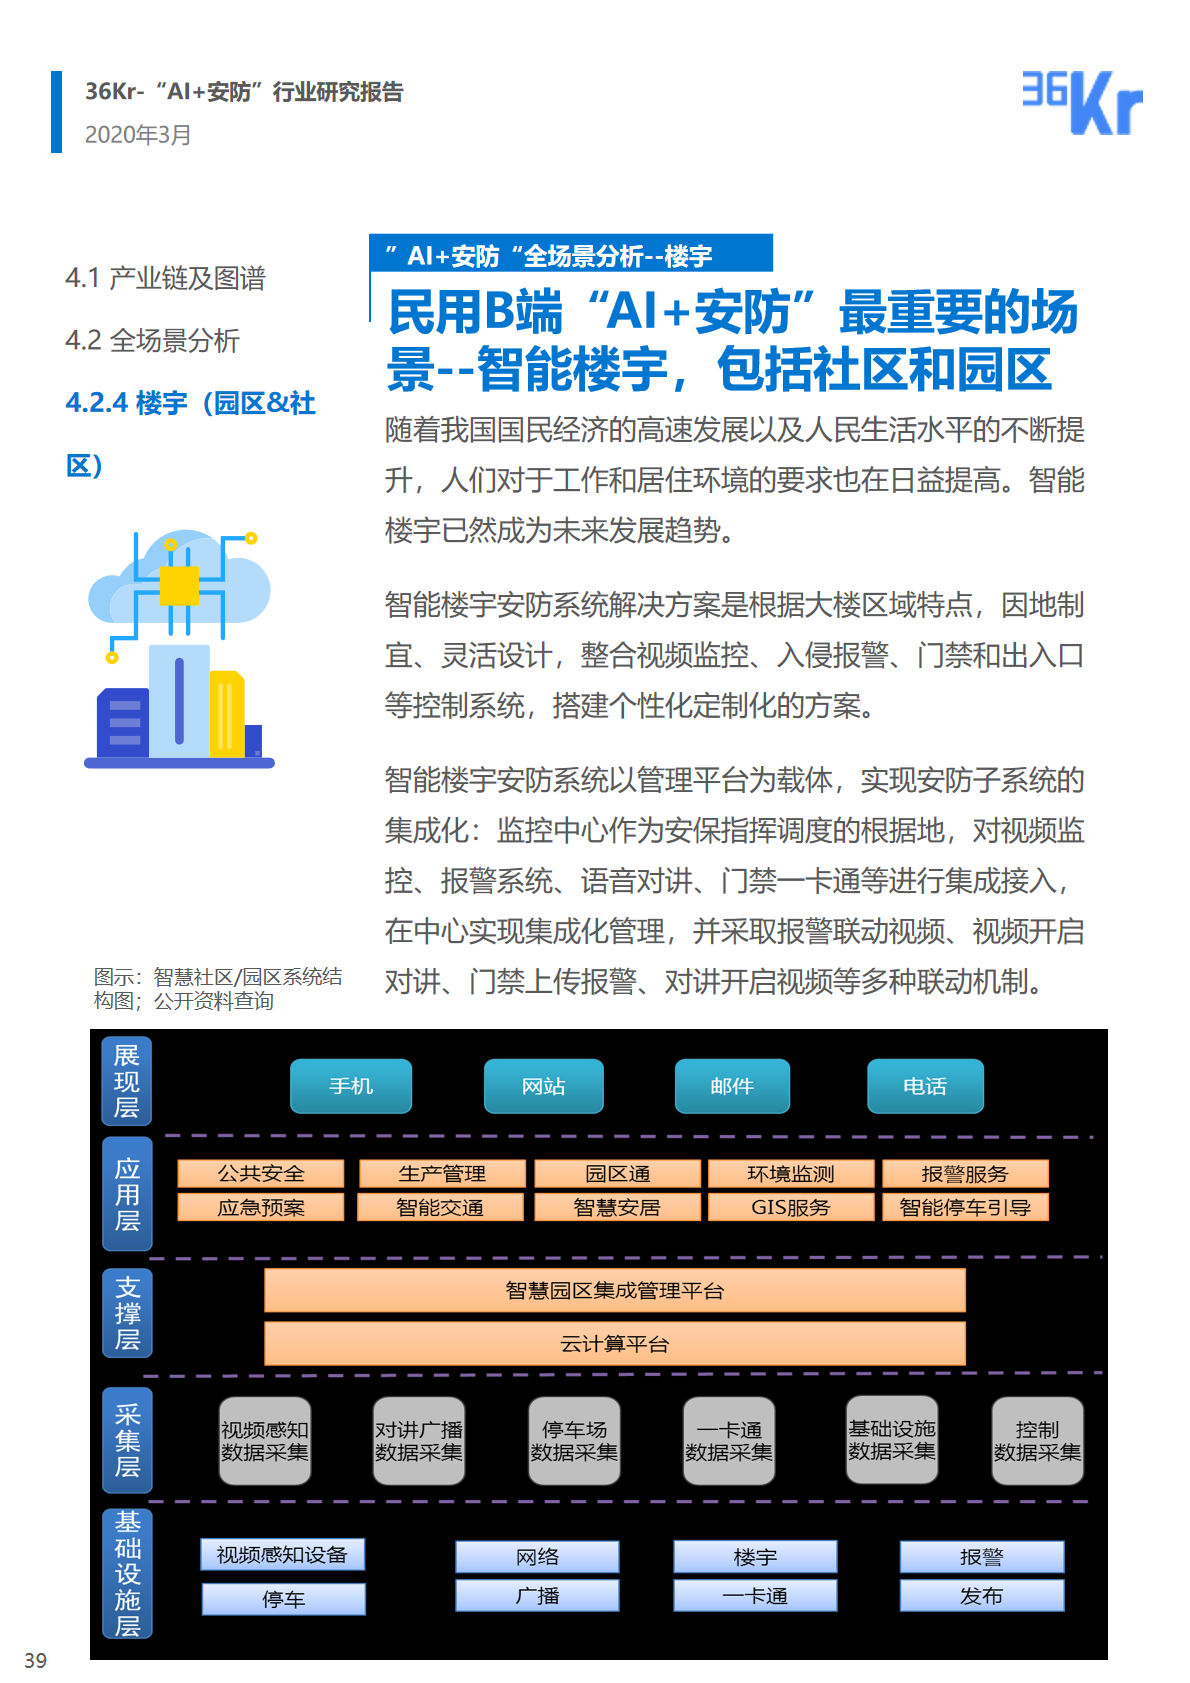 36氪研究院 | 2020年中国“AI+安防”行业研究报告